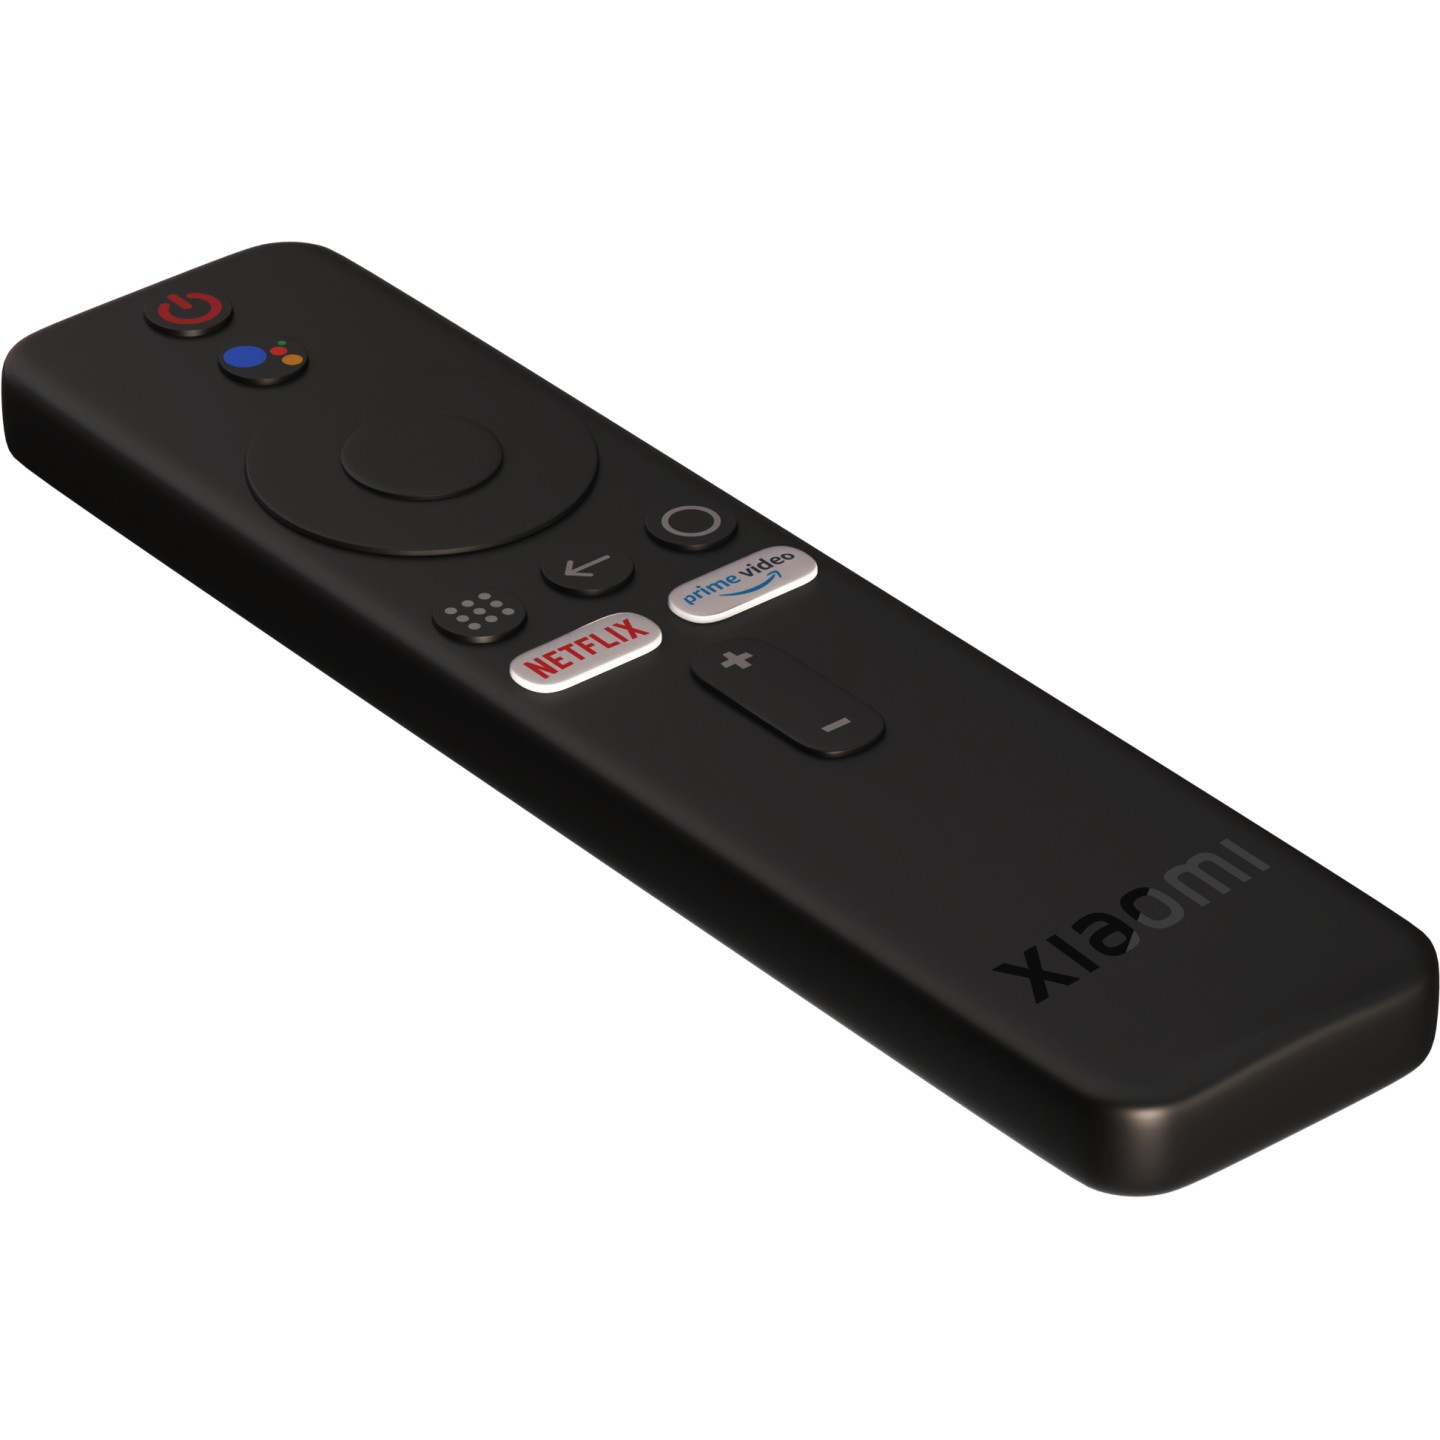 XIAOMI MI TV Stick MDZ-24-AA Odtwarzacz multimedialny Full HD - niskie ceny  i opinie w Media Expert